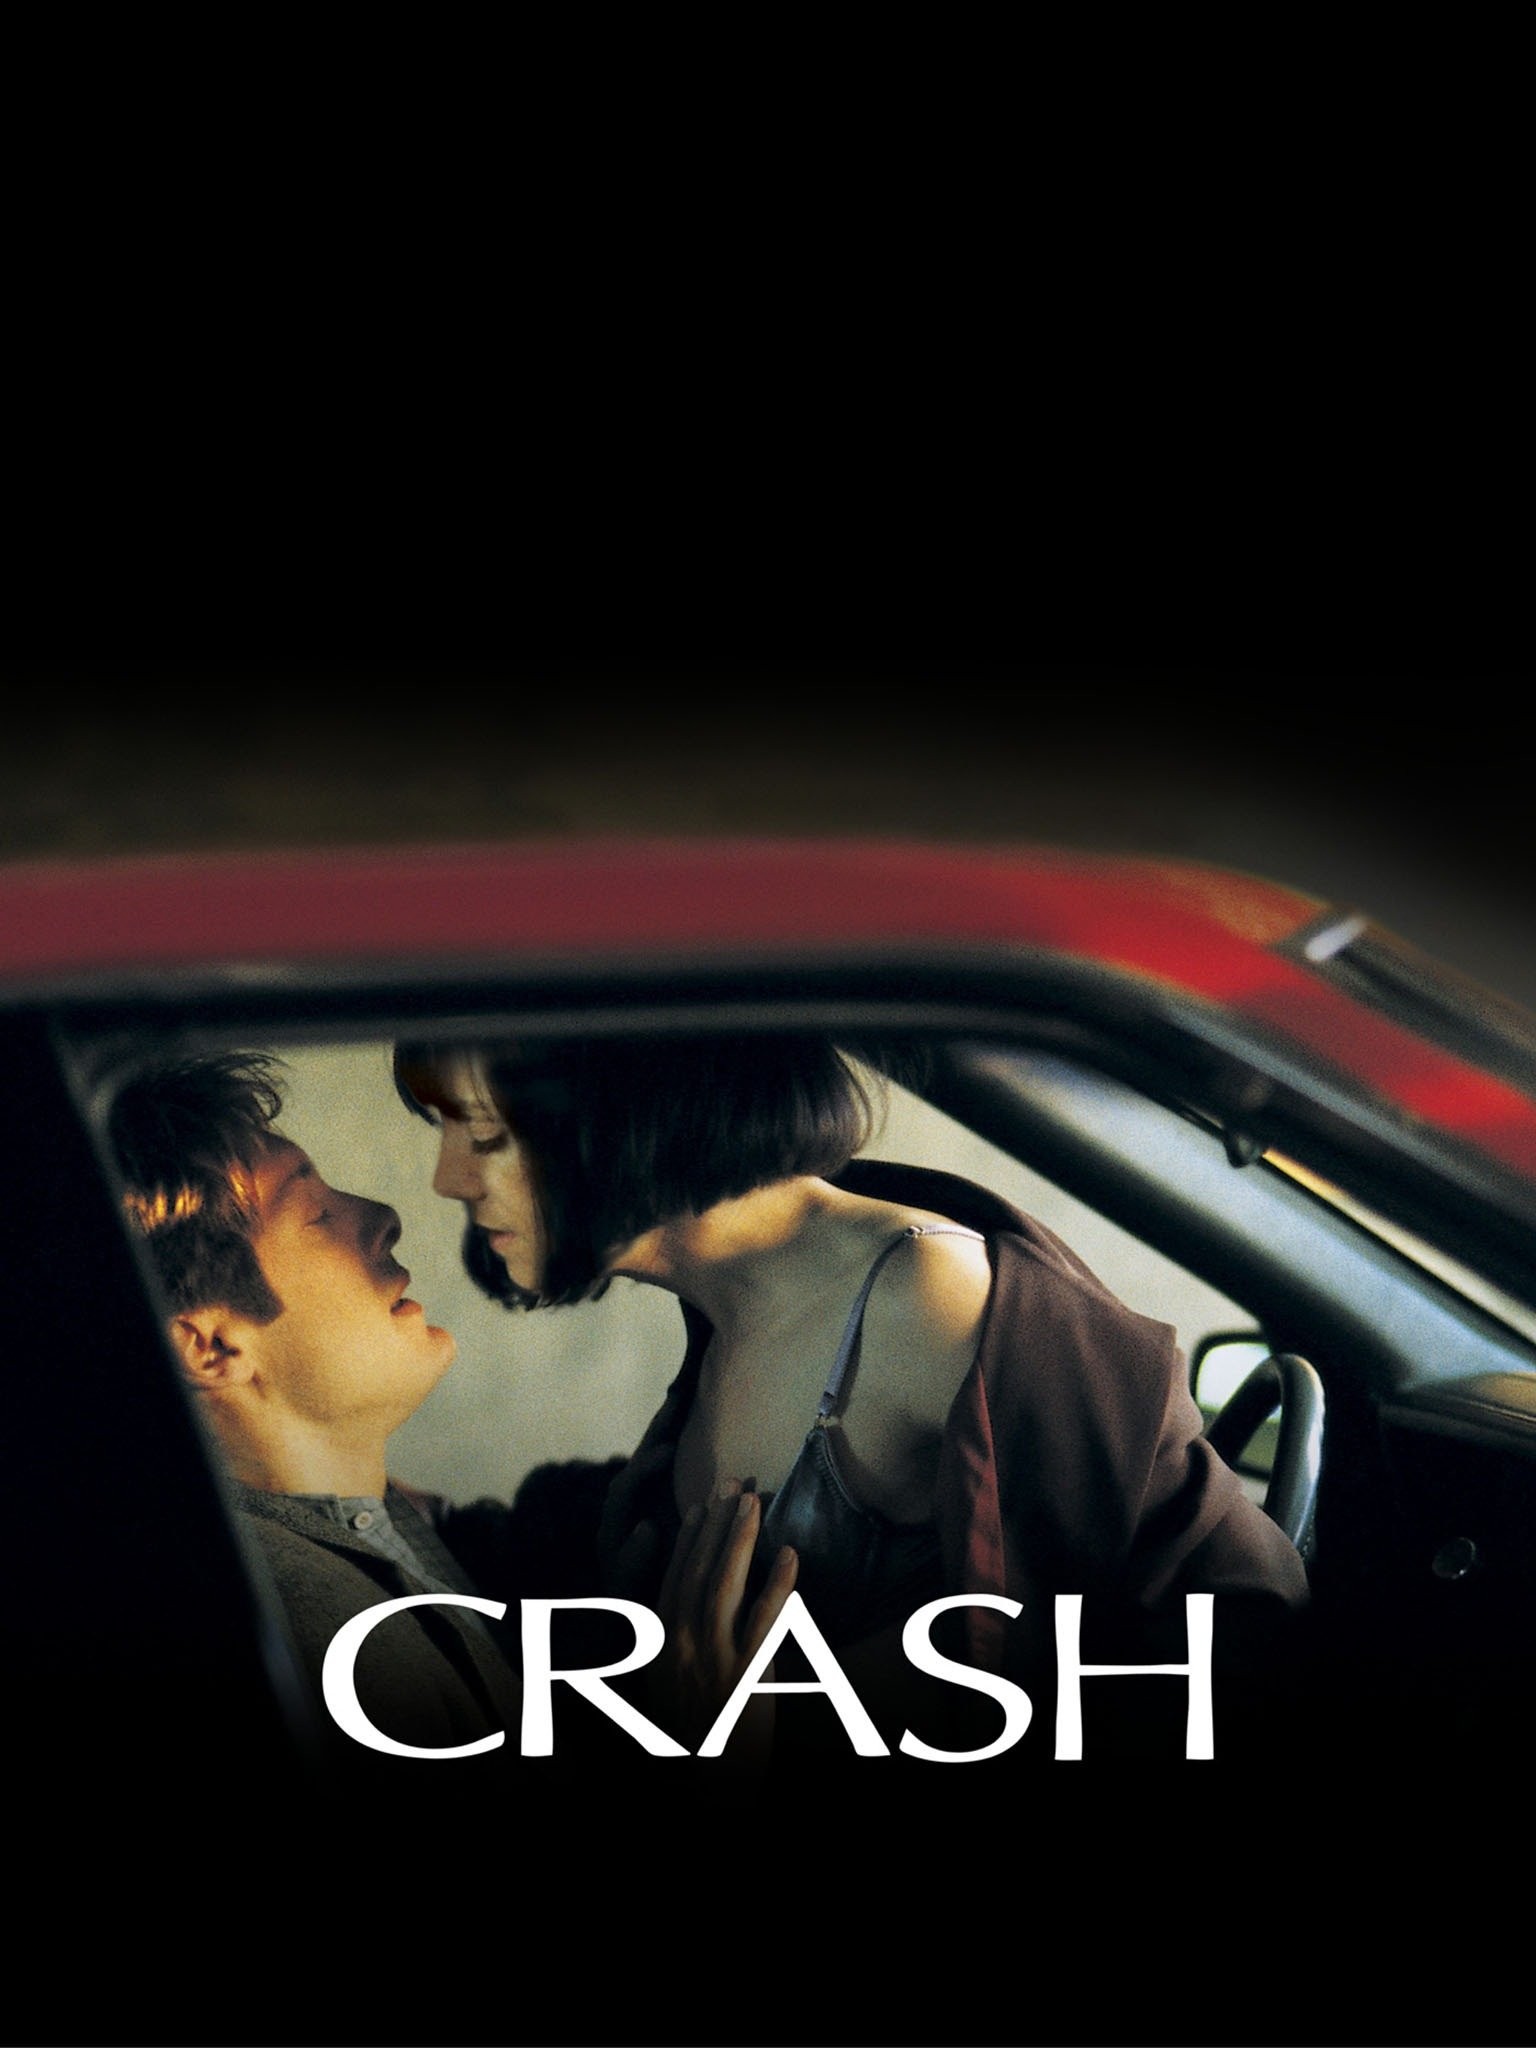 coleen murray recommends Crash 1996 Watch Online